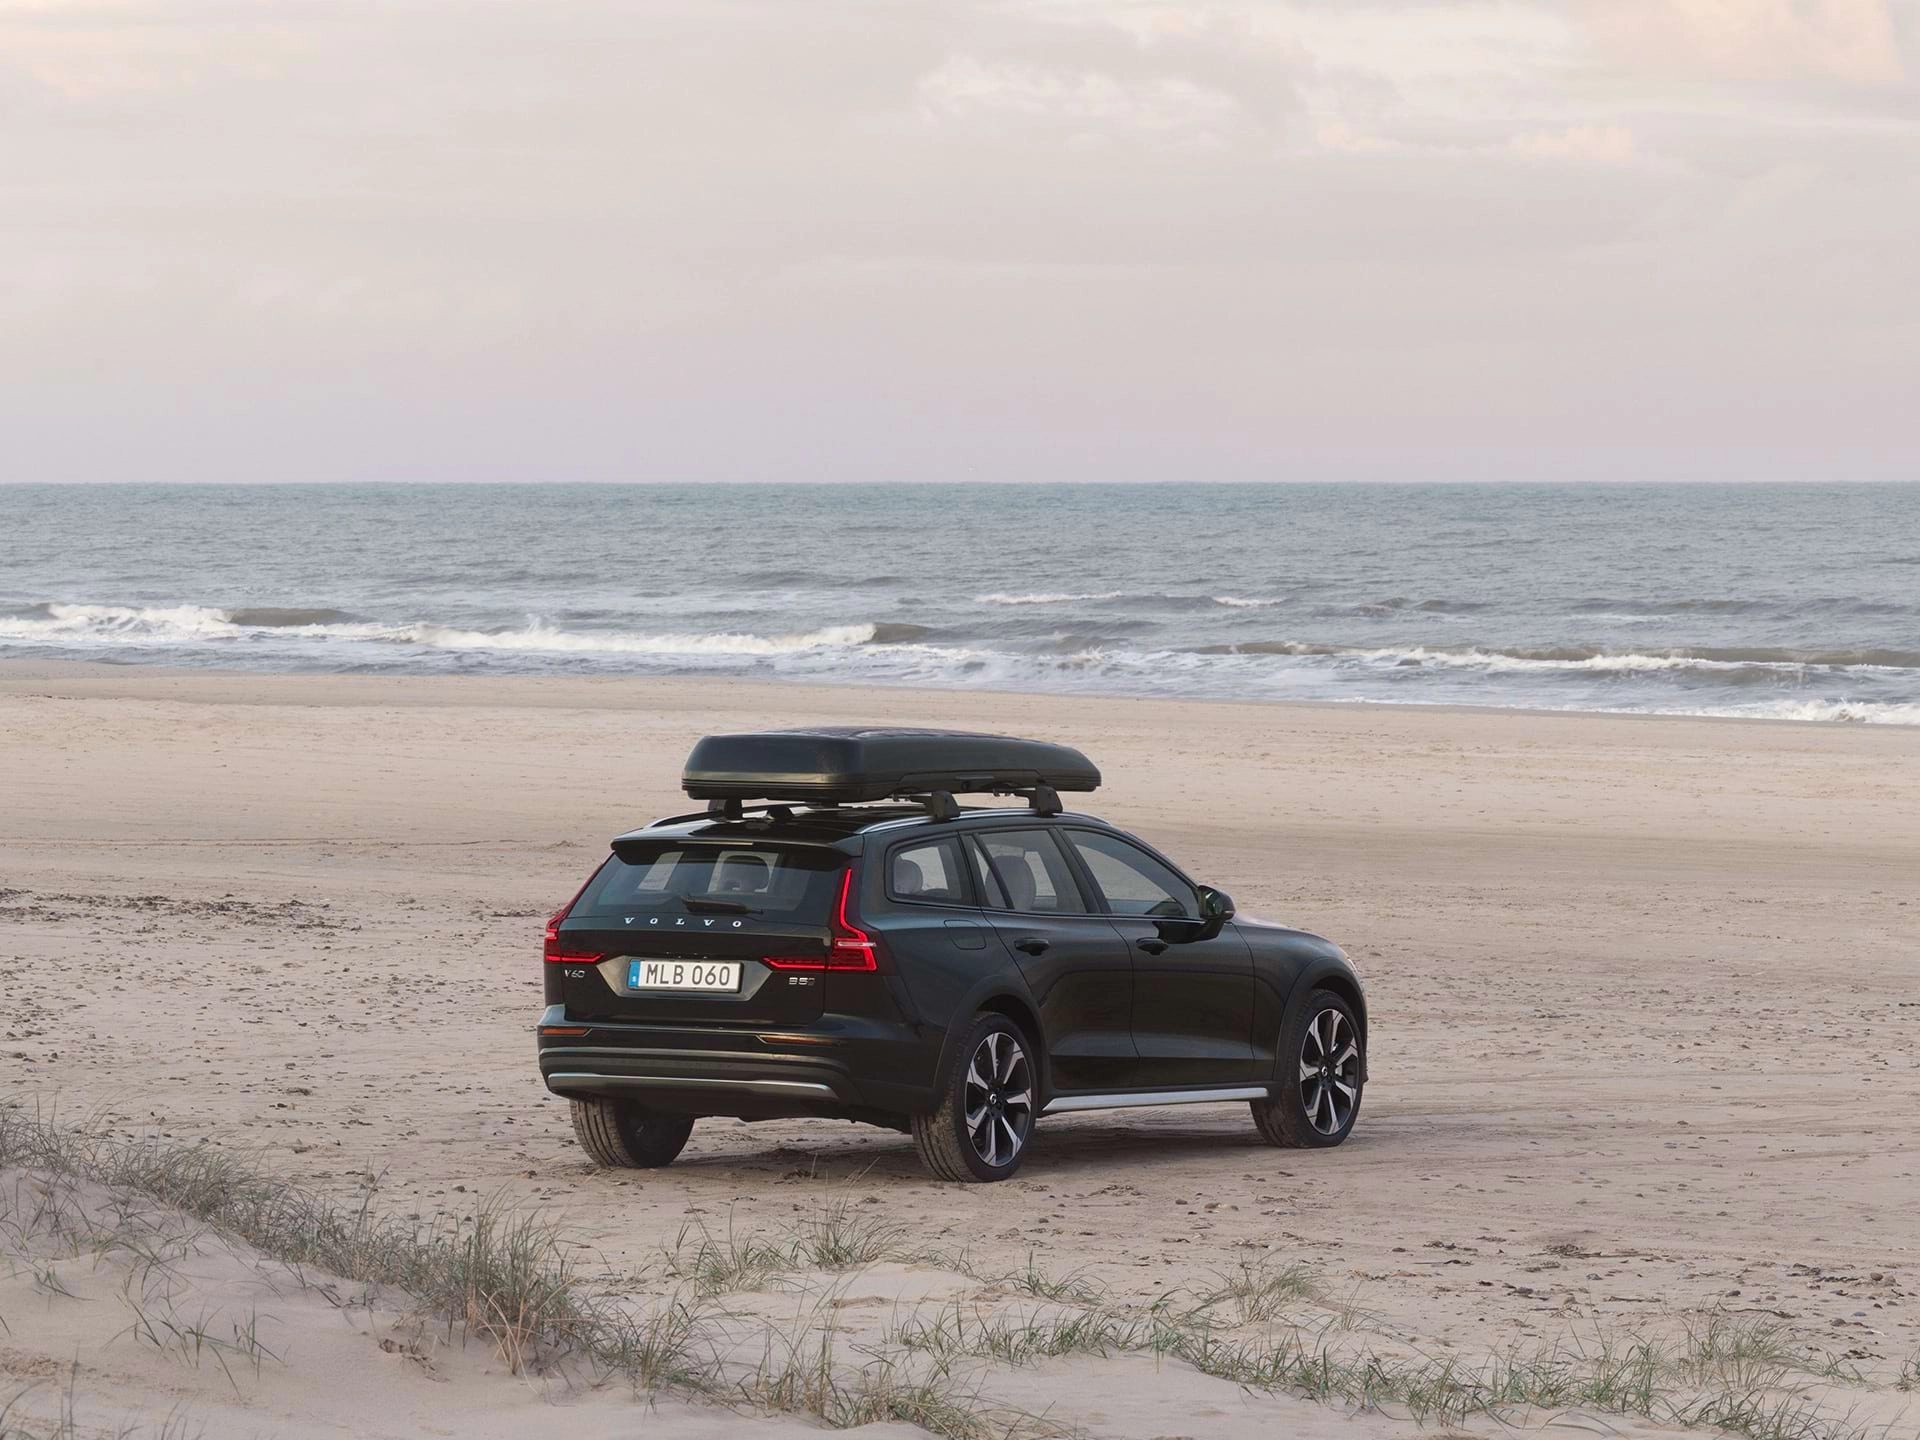 루프 박스가 달린 Volvo 스테이션 웨건 차량이 모래 해변에 주차되어 있습니다.